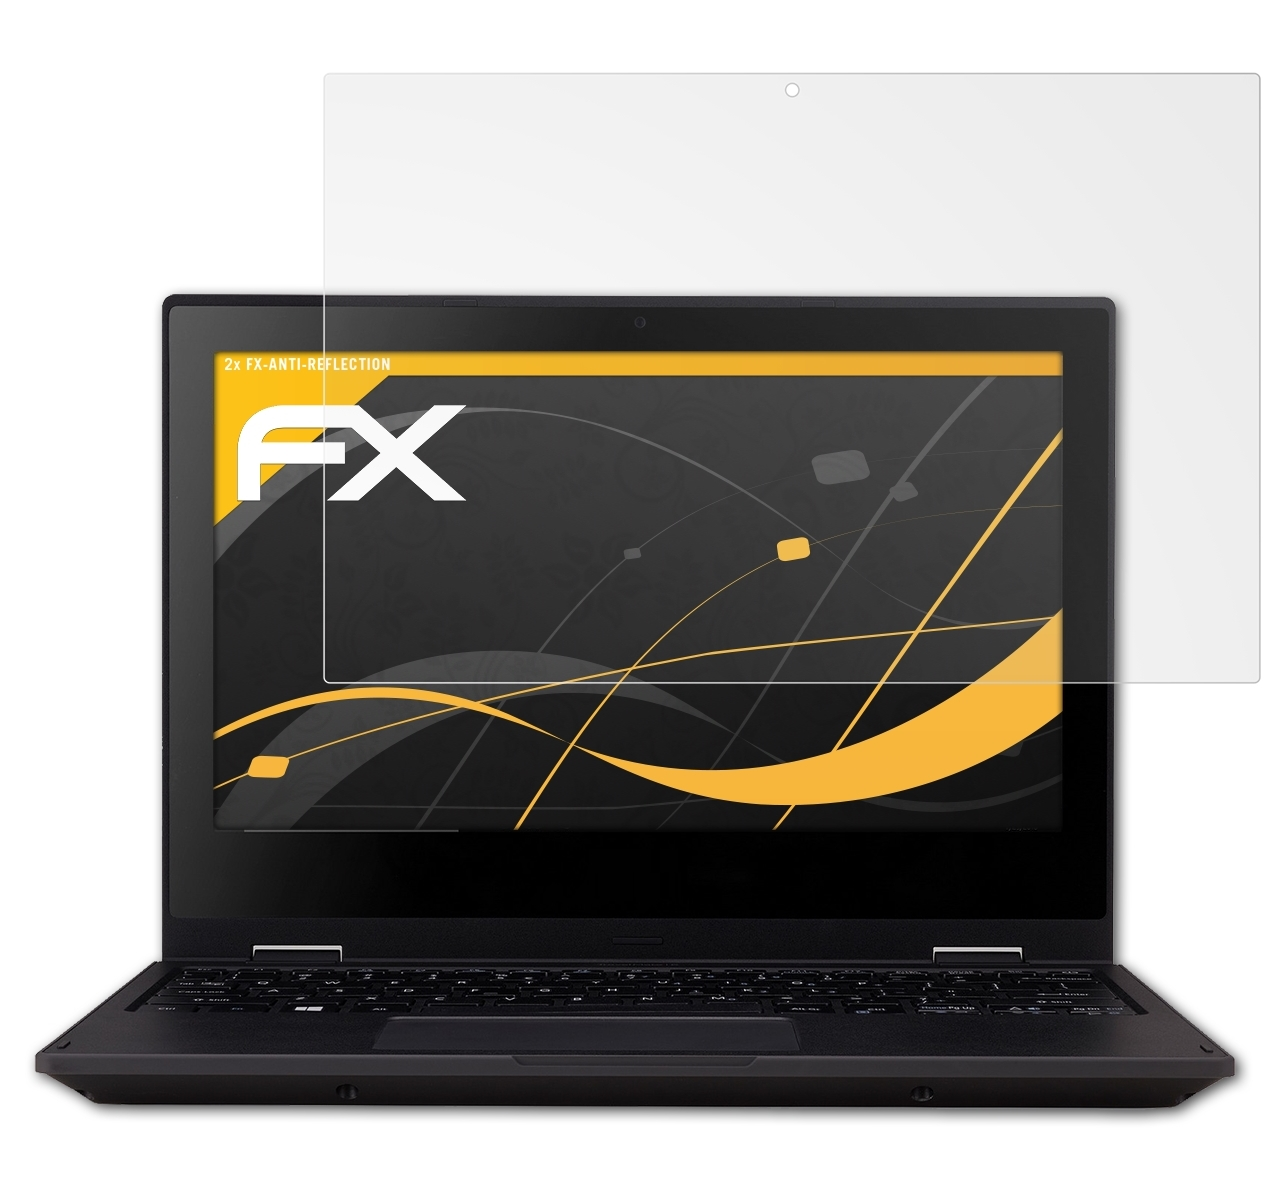 Displayschutz(für Acer B1) TravelMate Spin ATFOLIX FX-Antireflex 2x